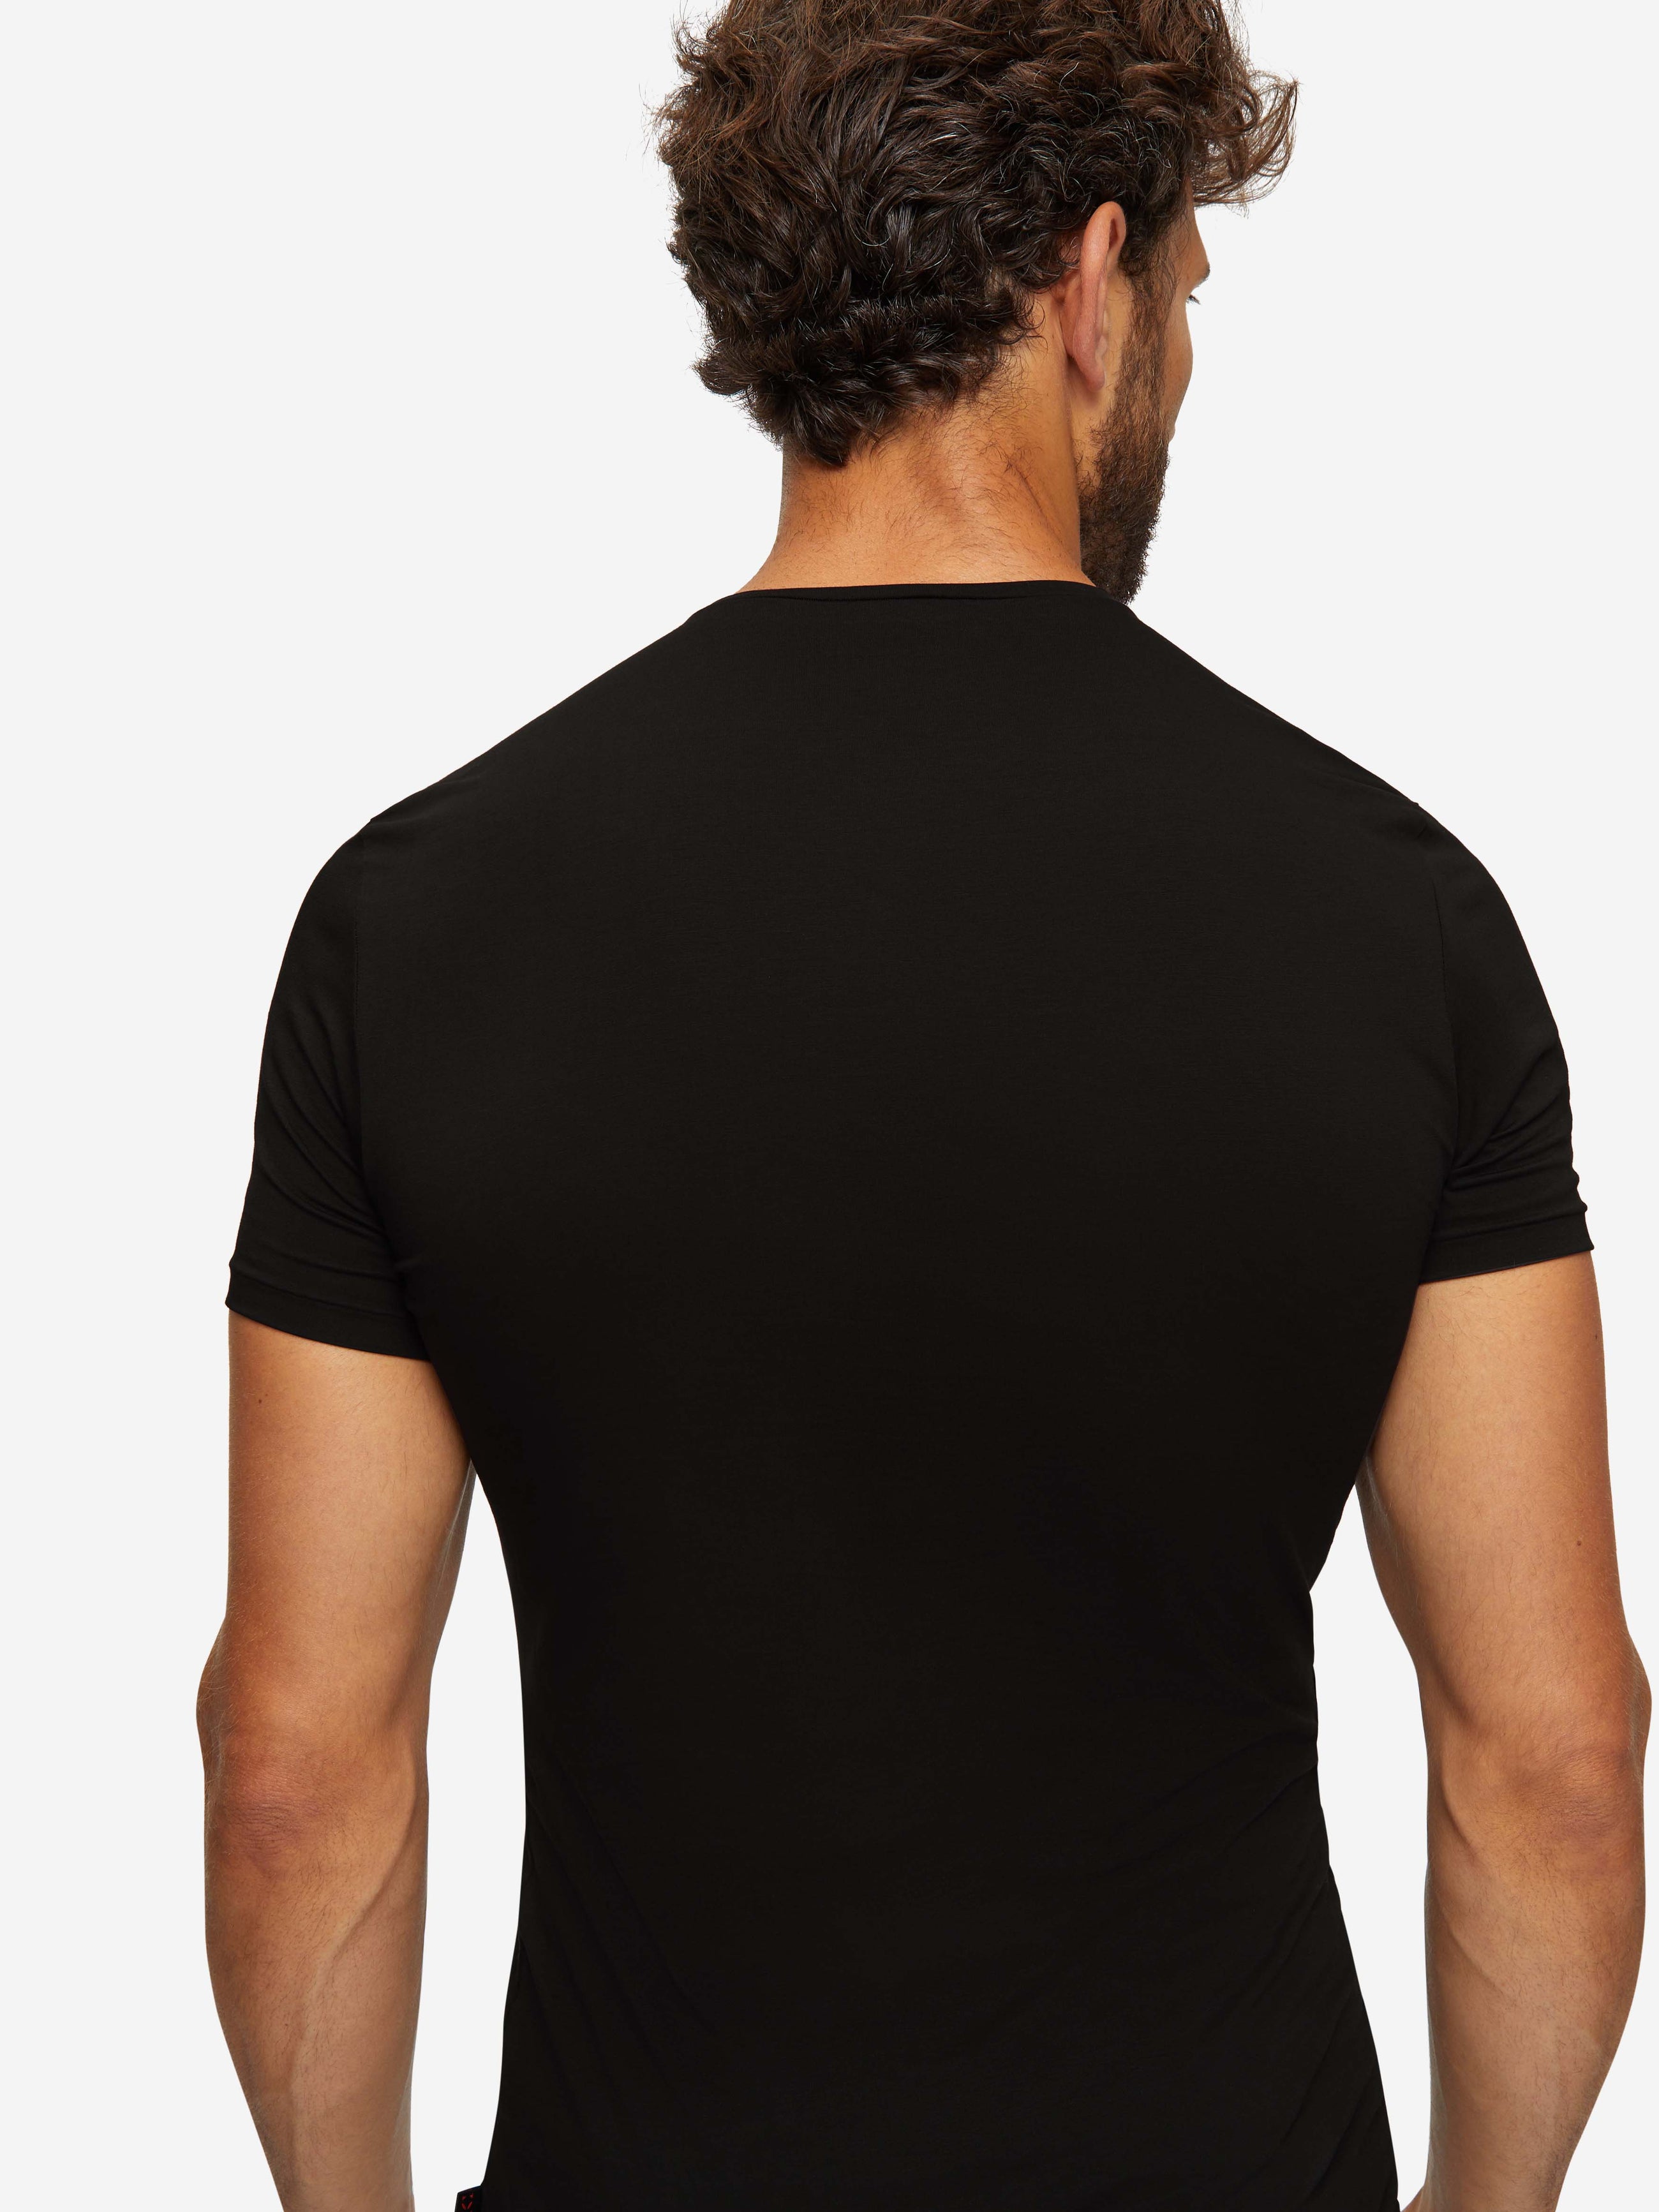 Men's Underwear T-Shirt Jack Pima Cotton Stretch Black